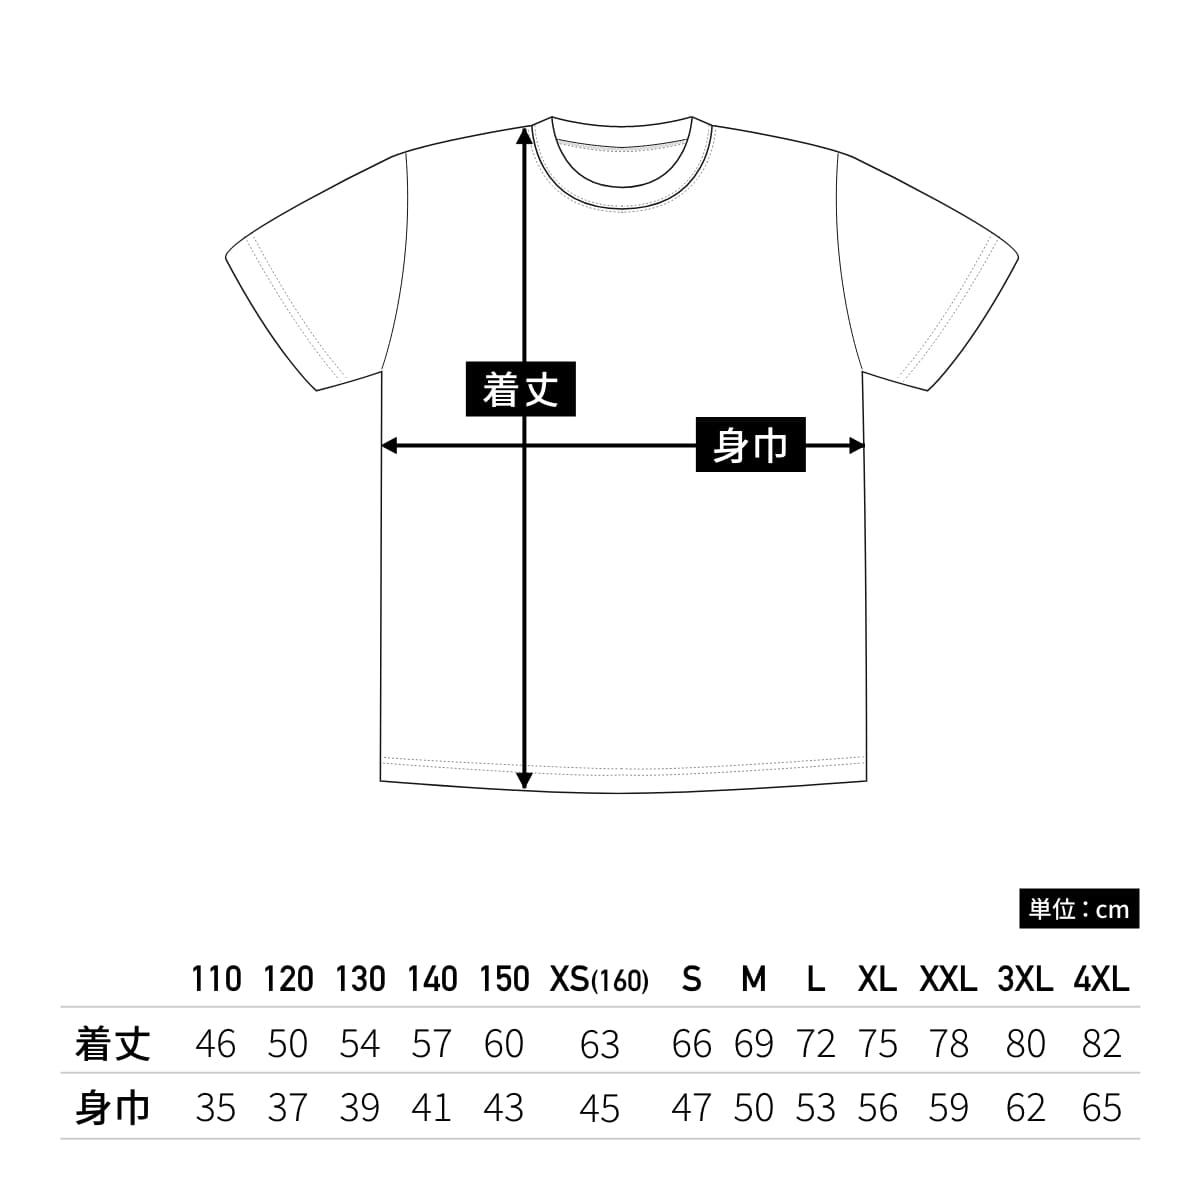 【送料無料】ドライライトTシャツ | メンズ | 1枚 | P330 | ブルー